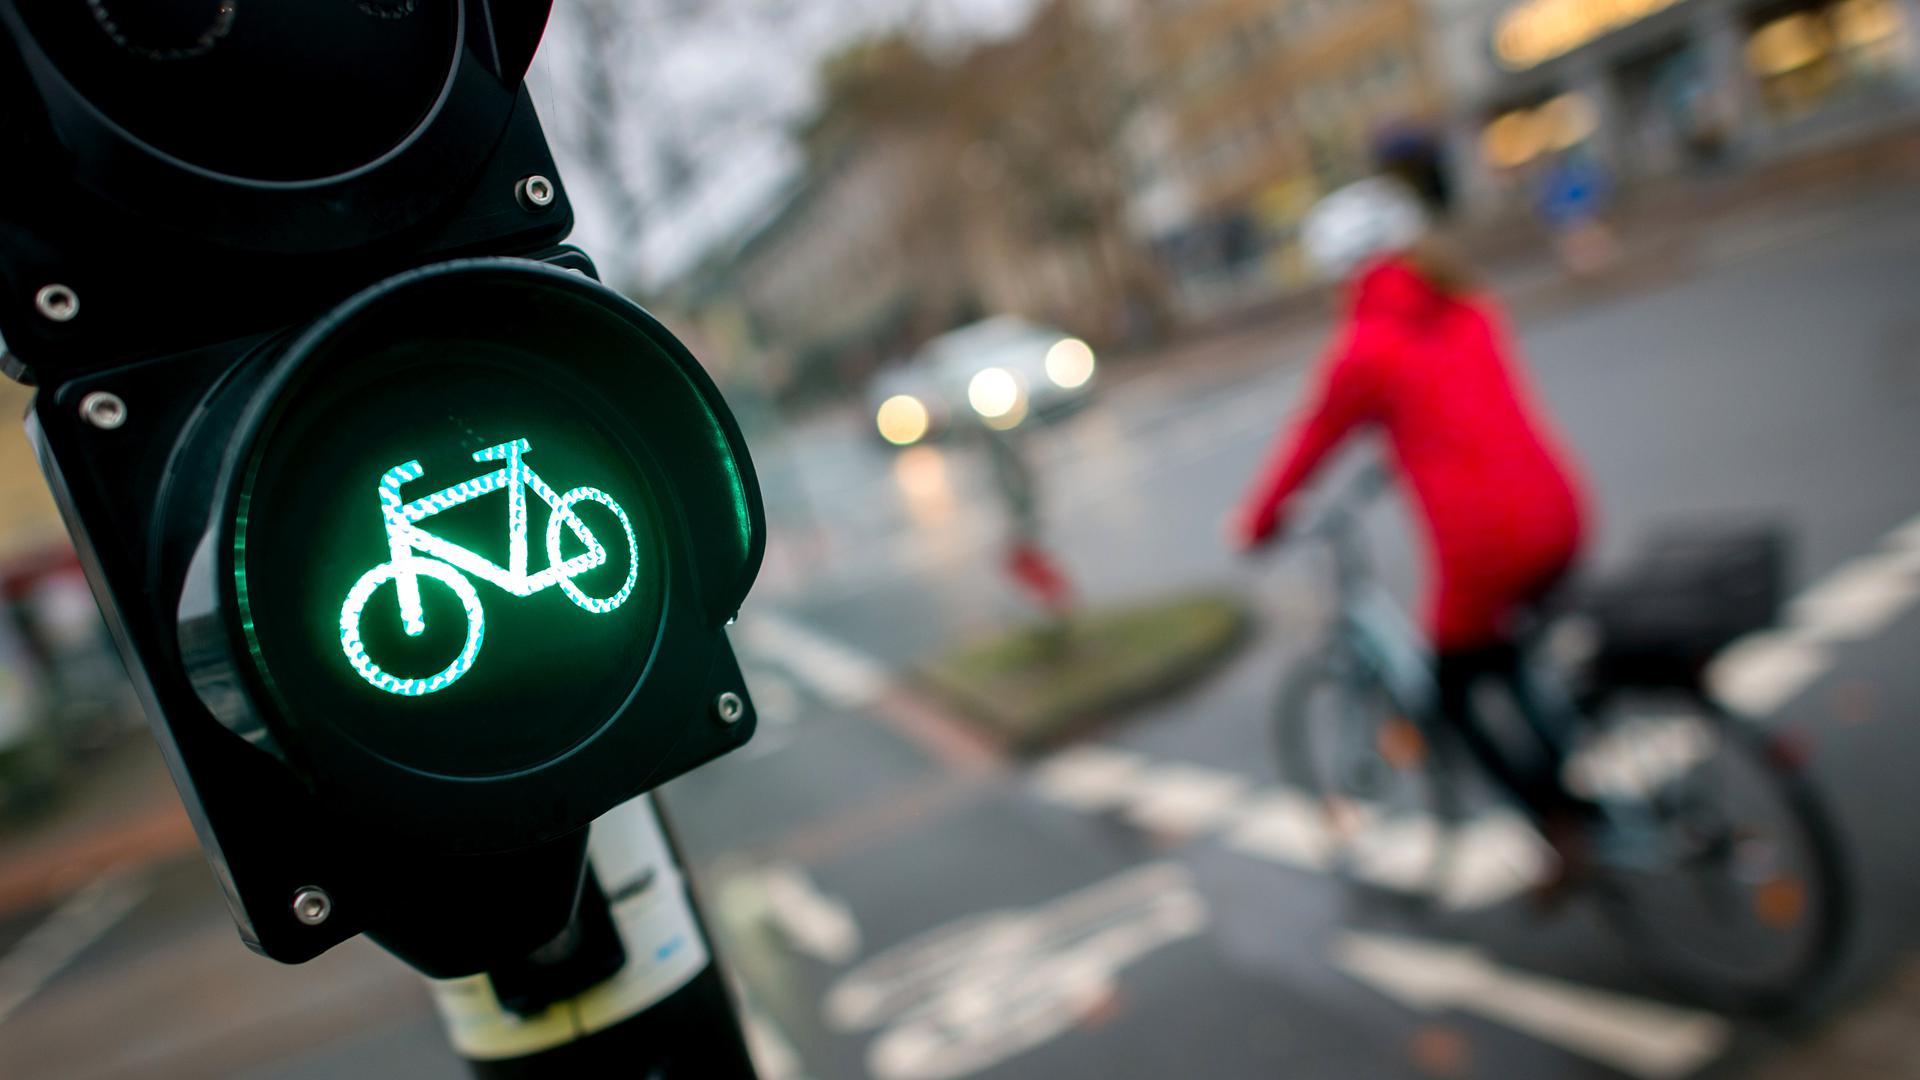 Eine grüne Ampel mit Fahrradsymbol, im Hintergrund ein Fahrradfahrer mit roter Jacke und Helm.